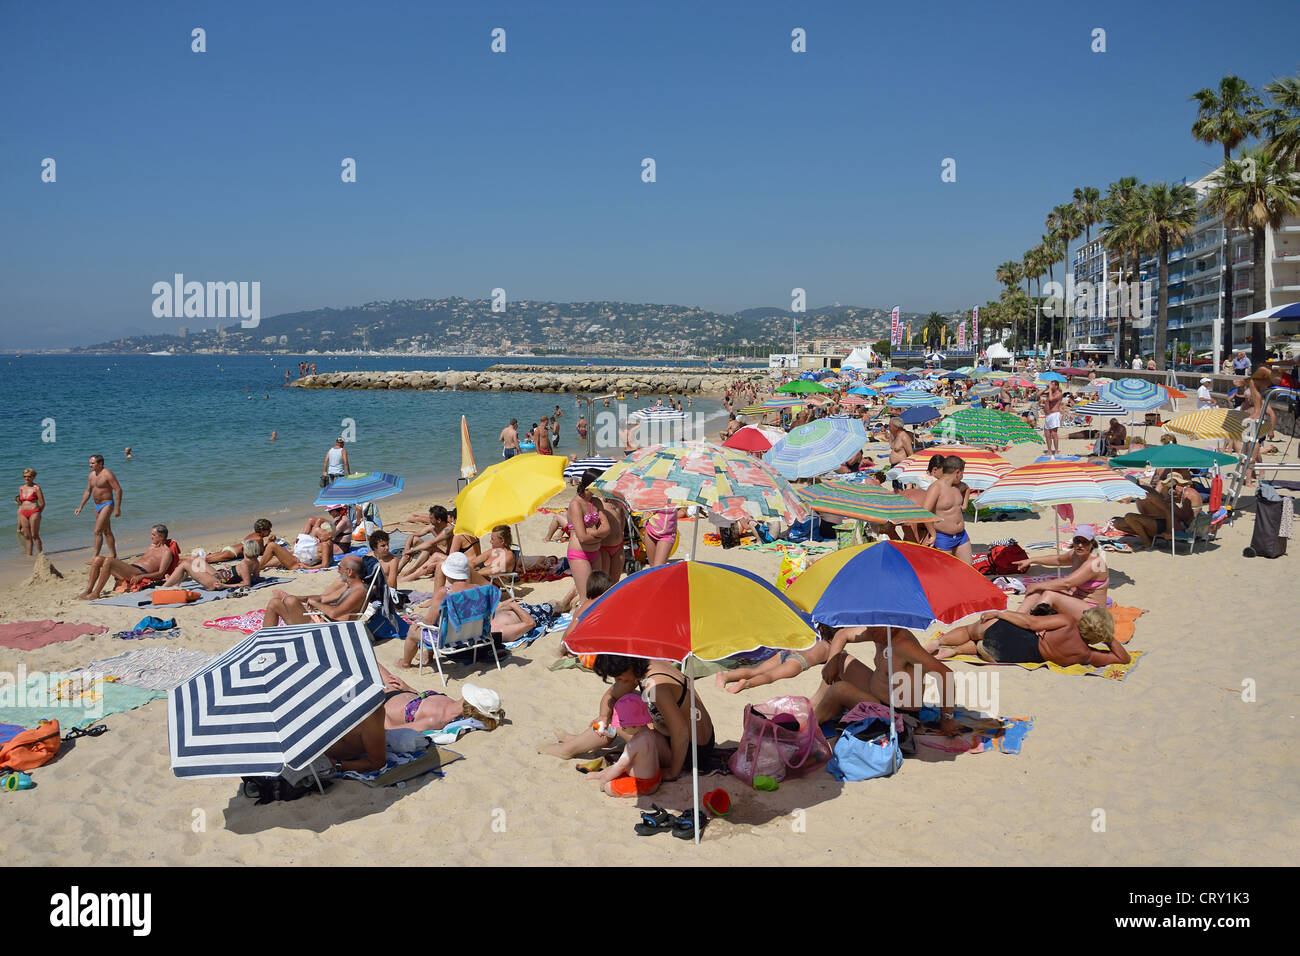 Plage Publique (public beach), Juan-les-Pins, Côte d'Azur, Alpes-Maritimes, Provence-Alpes-Côte d'Azur, France Stock Photo